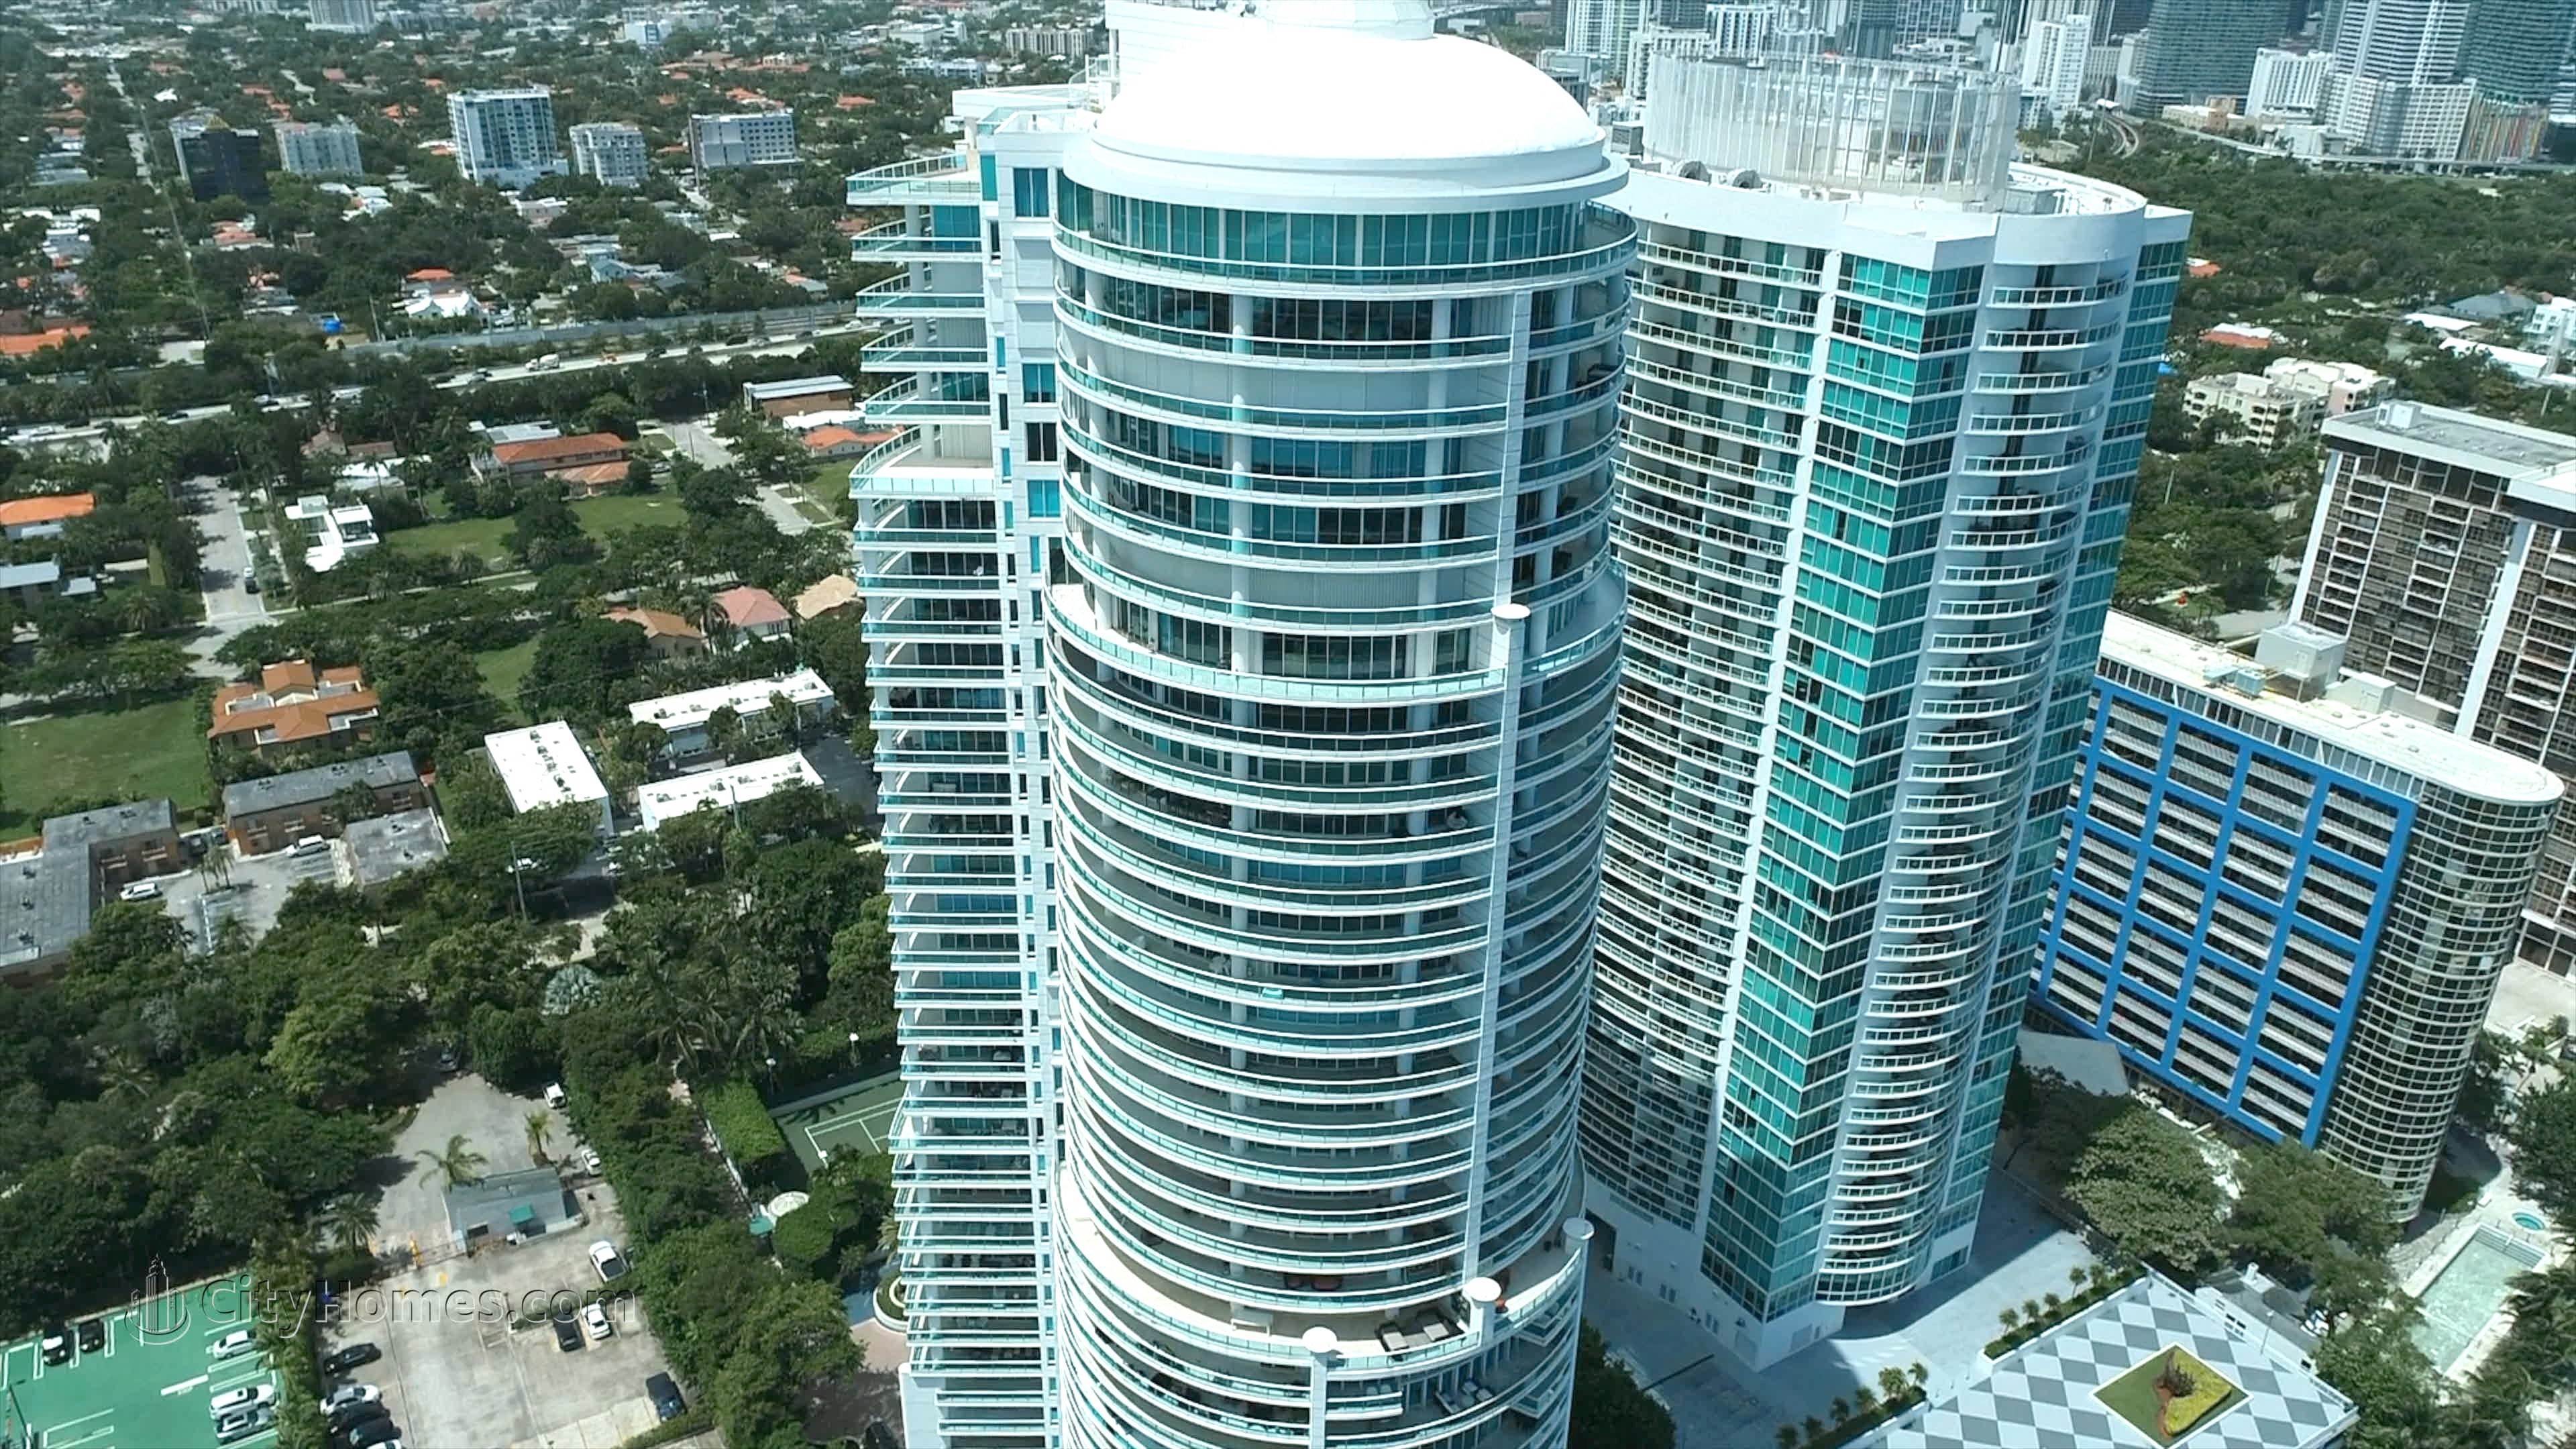 6. Bristol Tower Brickell building at 2127 Brickell Avenue, Brickell, Miami, FL 33129